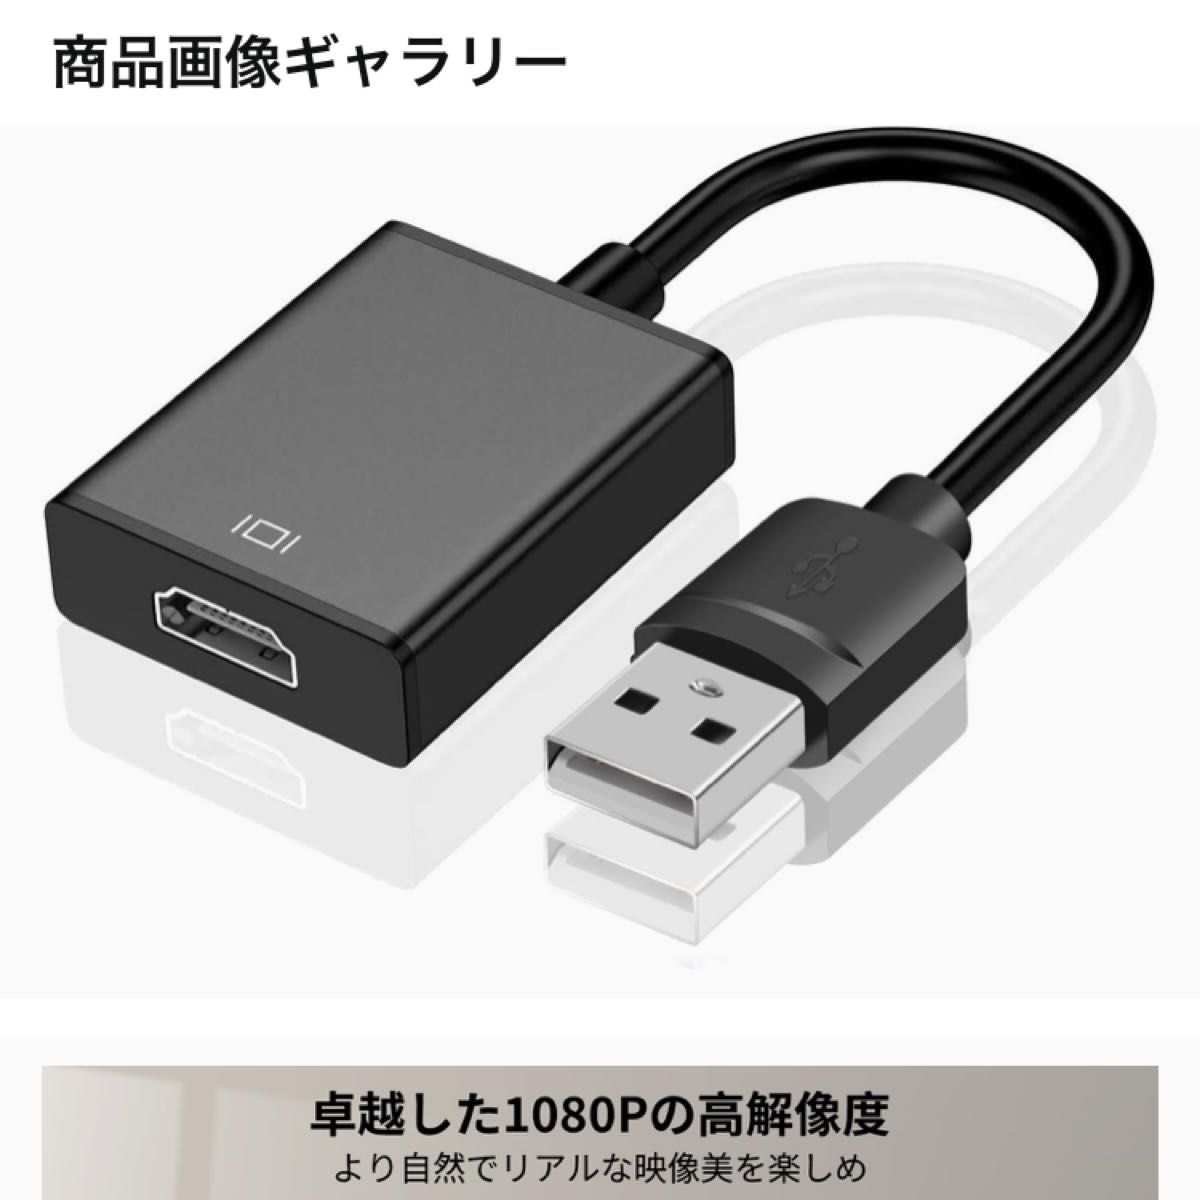 USB HDMI 変換アダプタ 「ドライバー内蔵」 usbディスプレイアダプタ 5Gbps高速伝送 usb3.0 hdmi 変換 